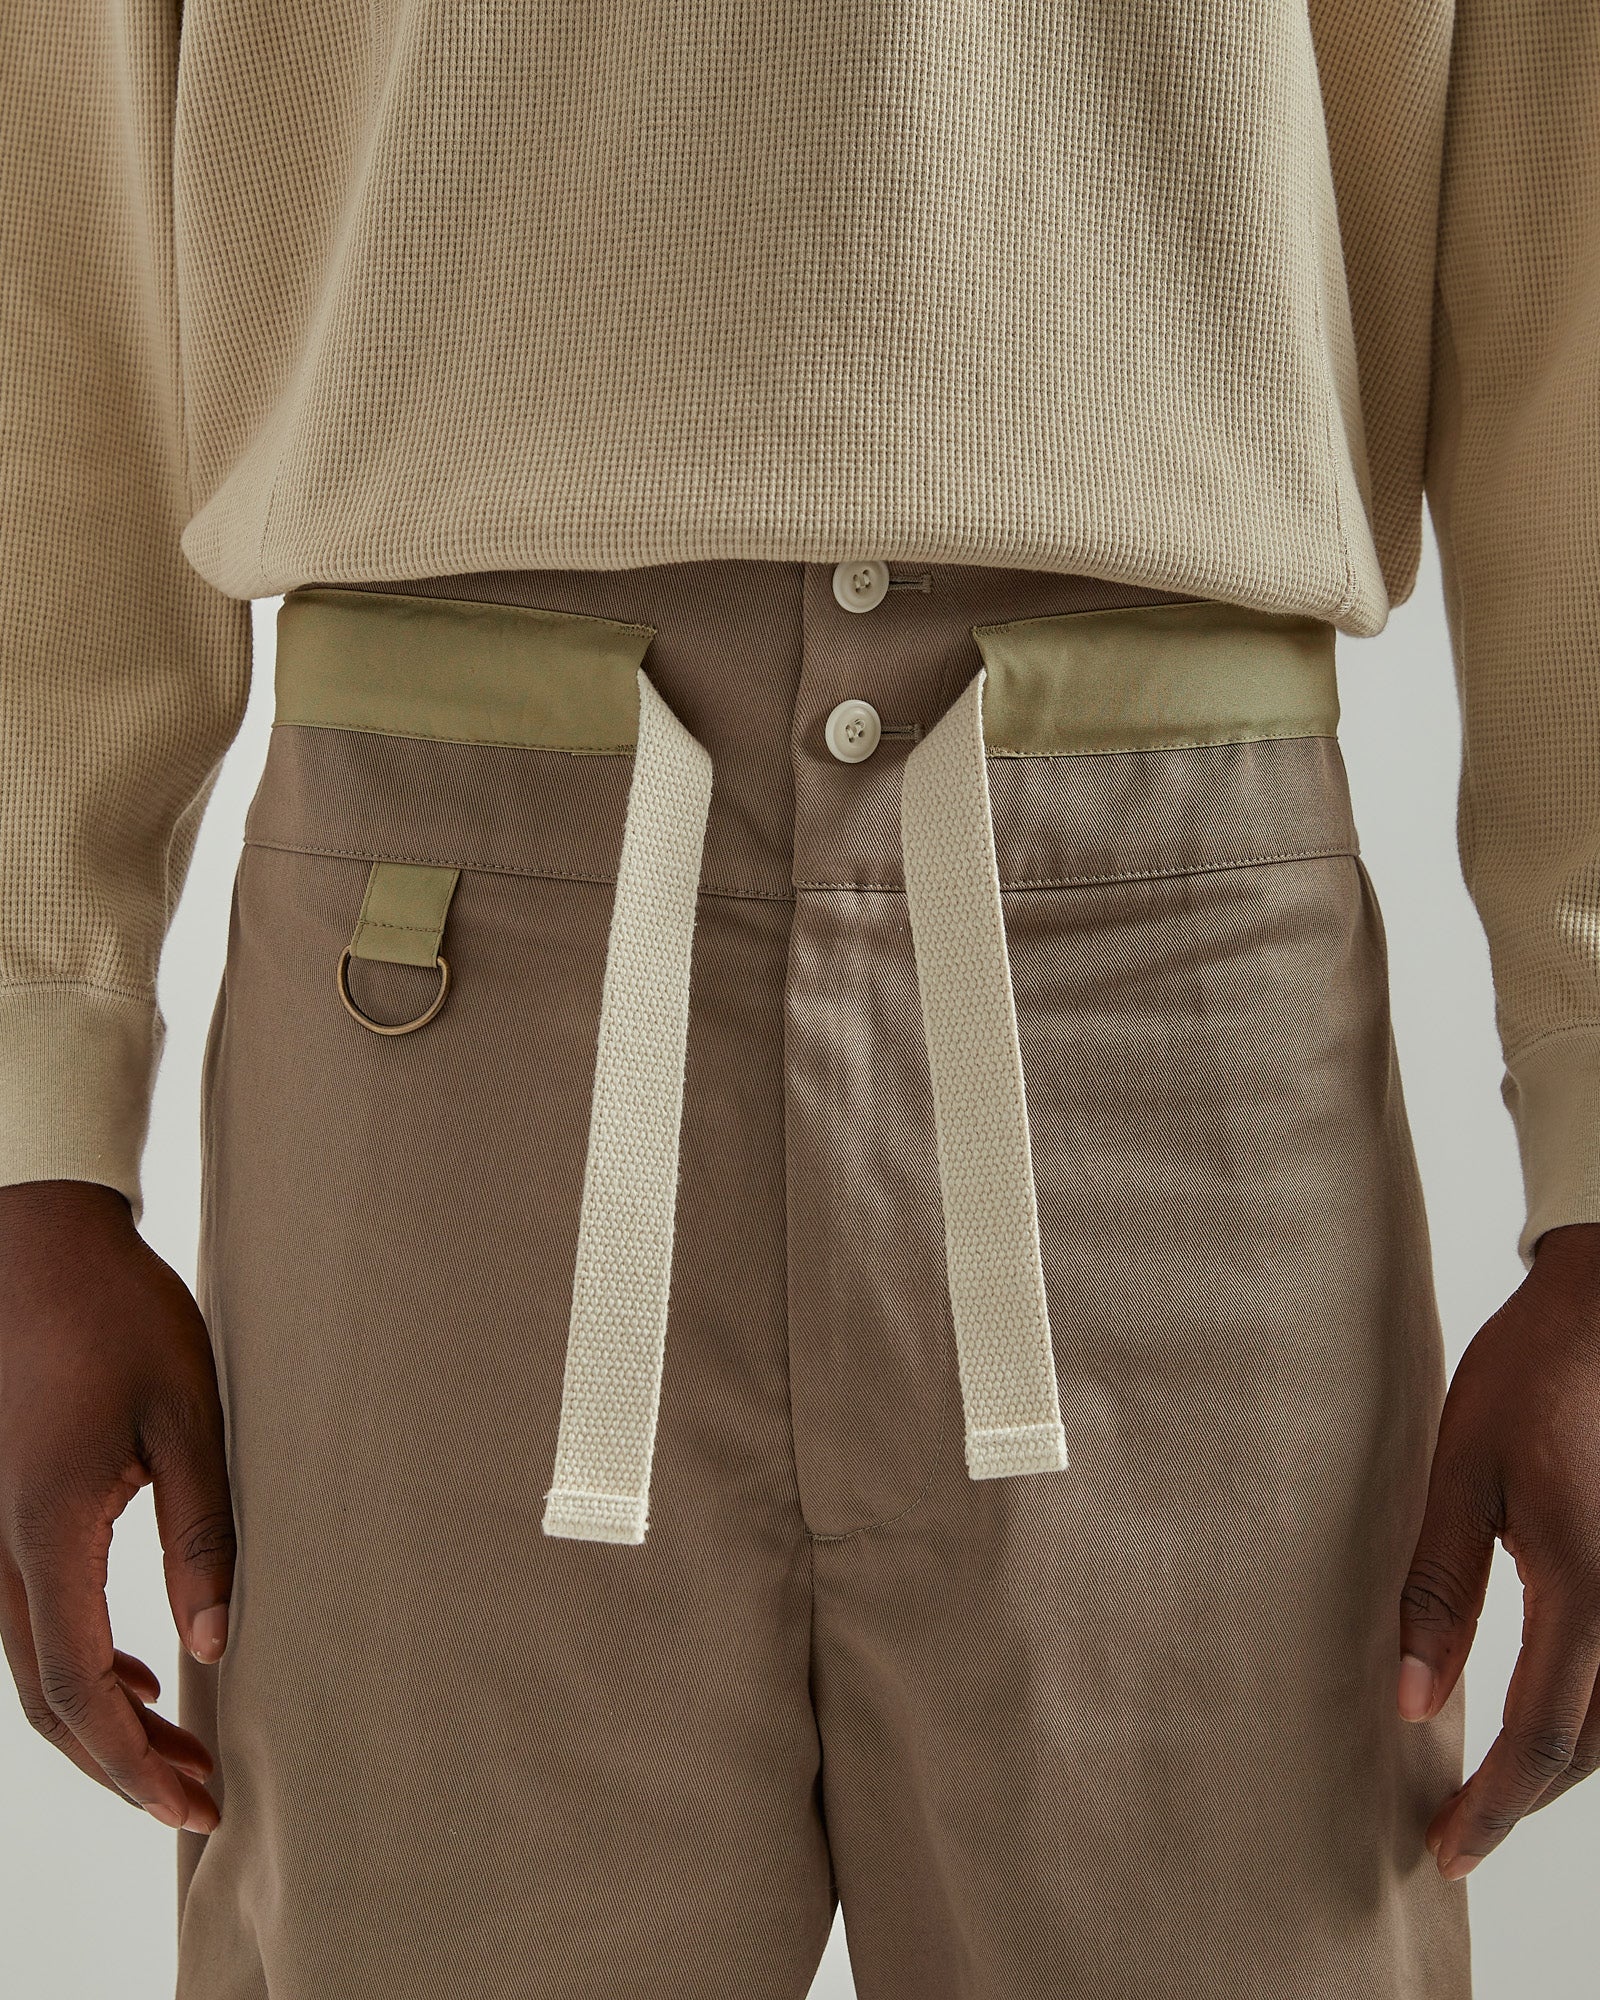 Pullcord Shorts in Khaki